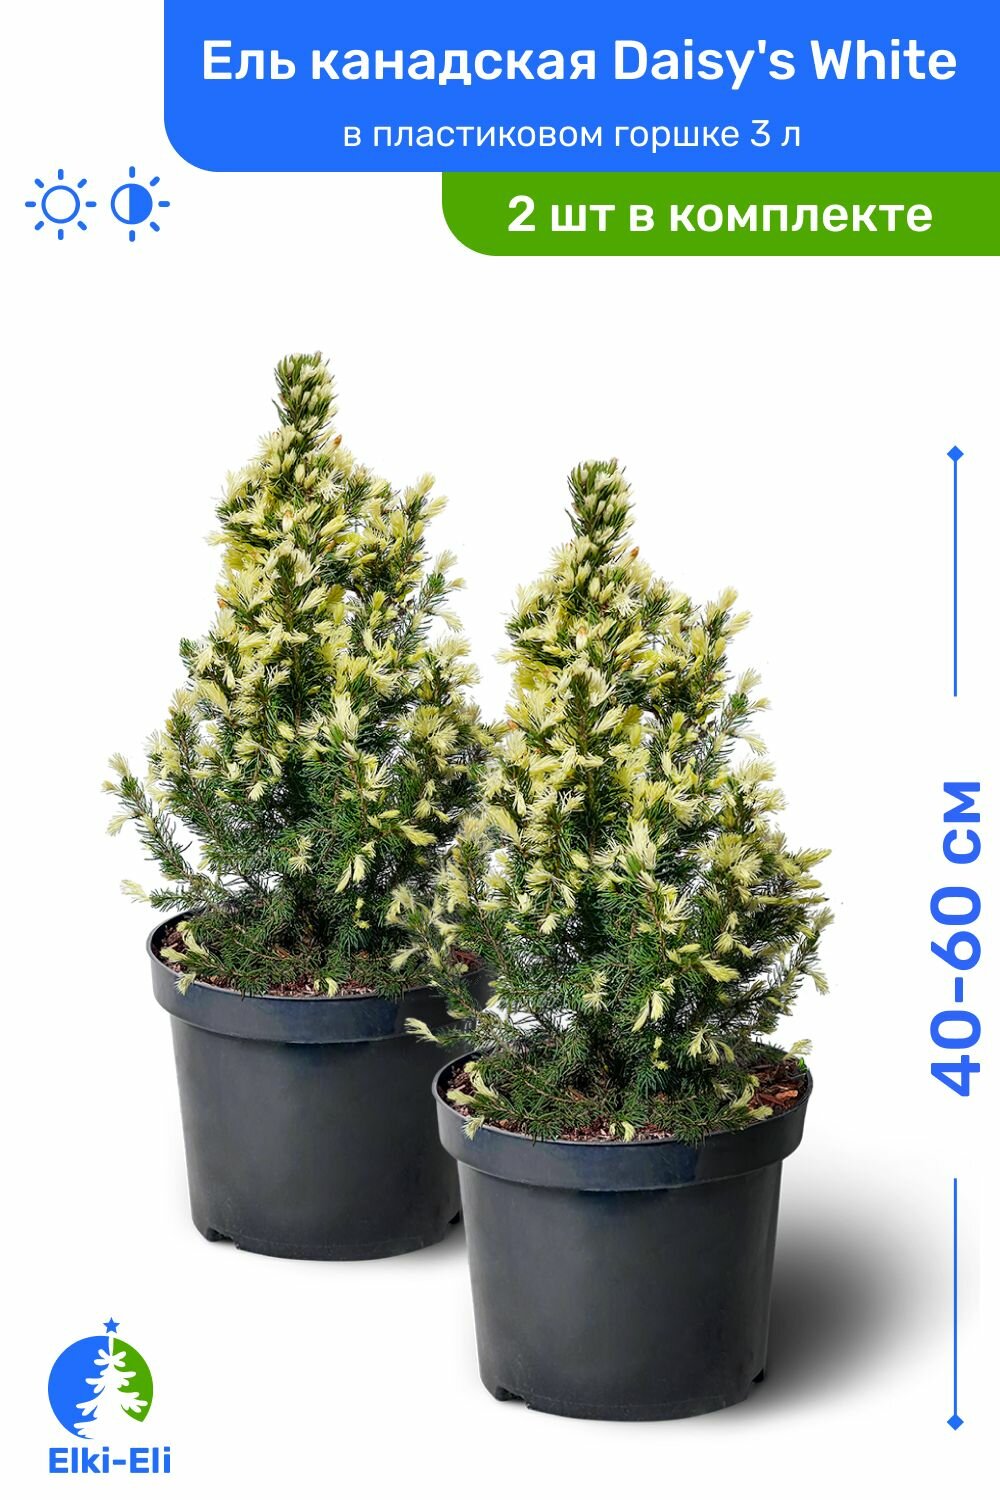 Ель канадская Daisys White (Дейзи Вайт) 40-60 см в пластиковом горшке 3 л, саженец, хвойное живое растение, комплект из 2 шт